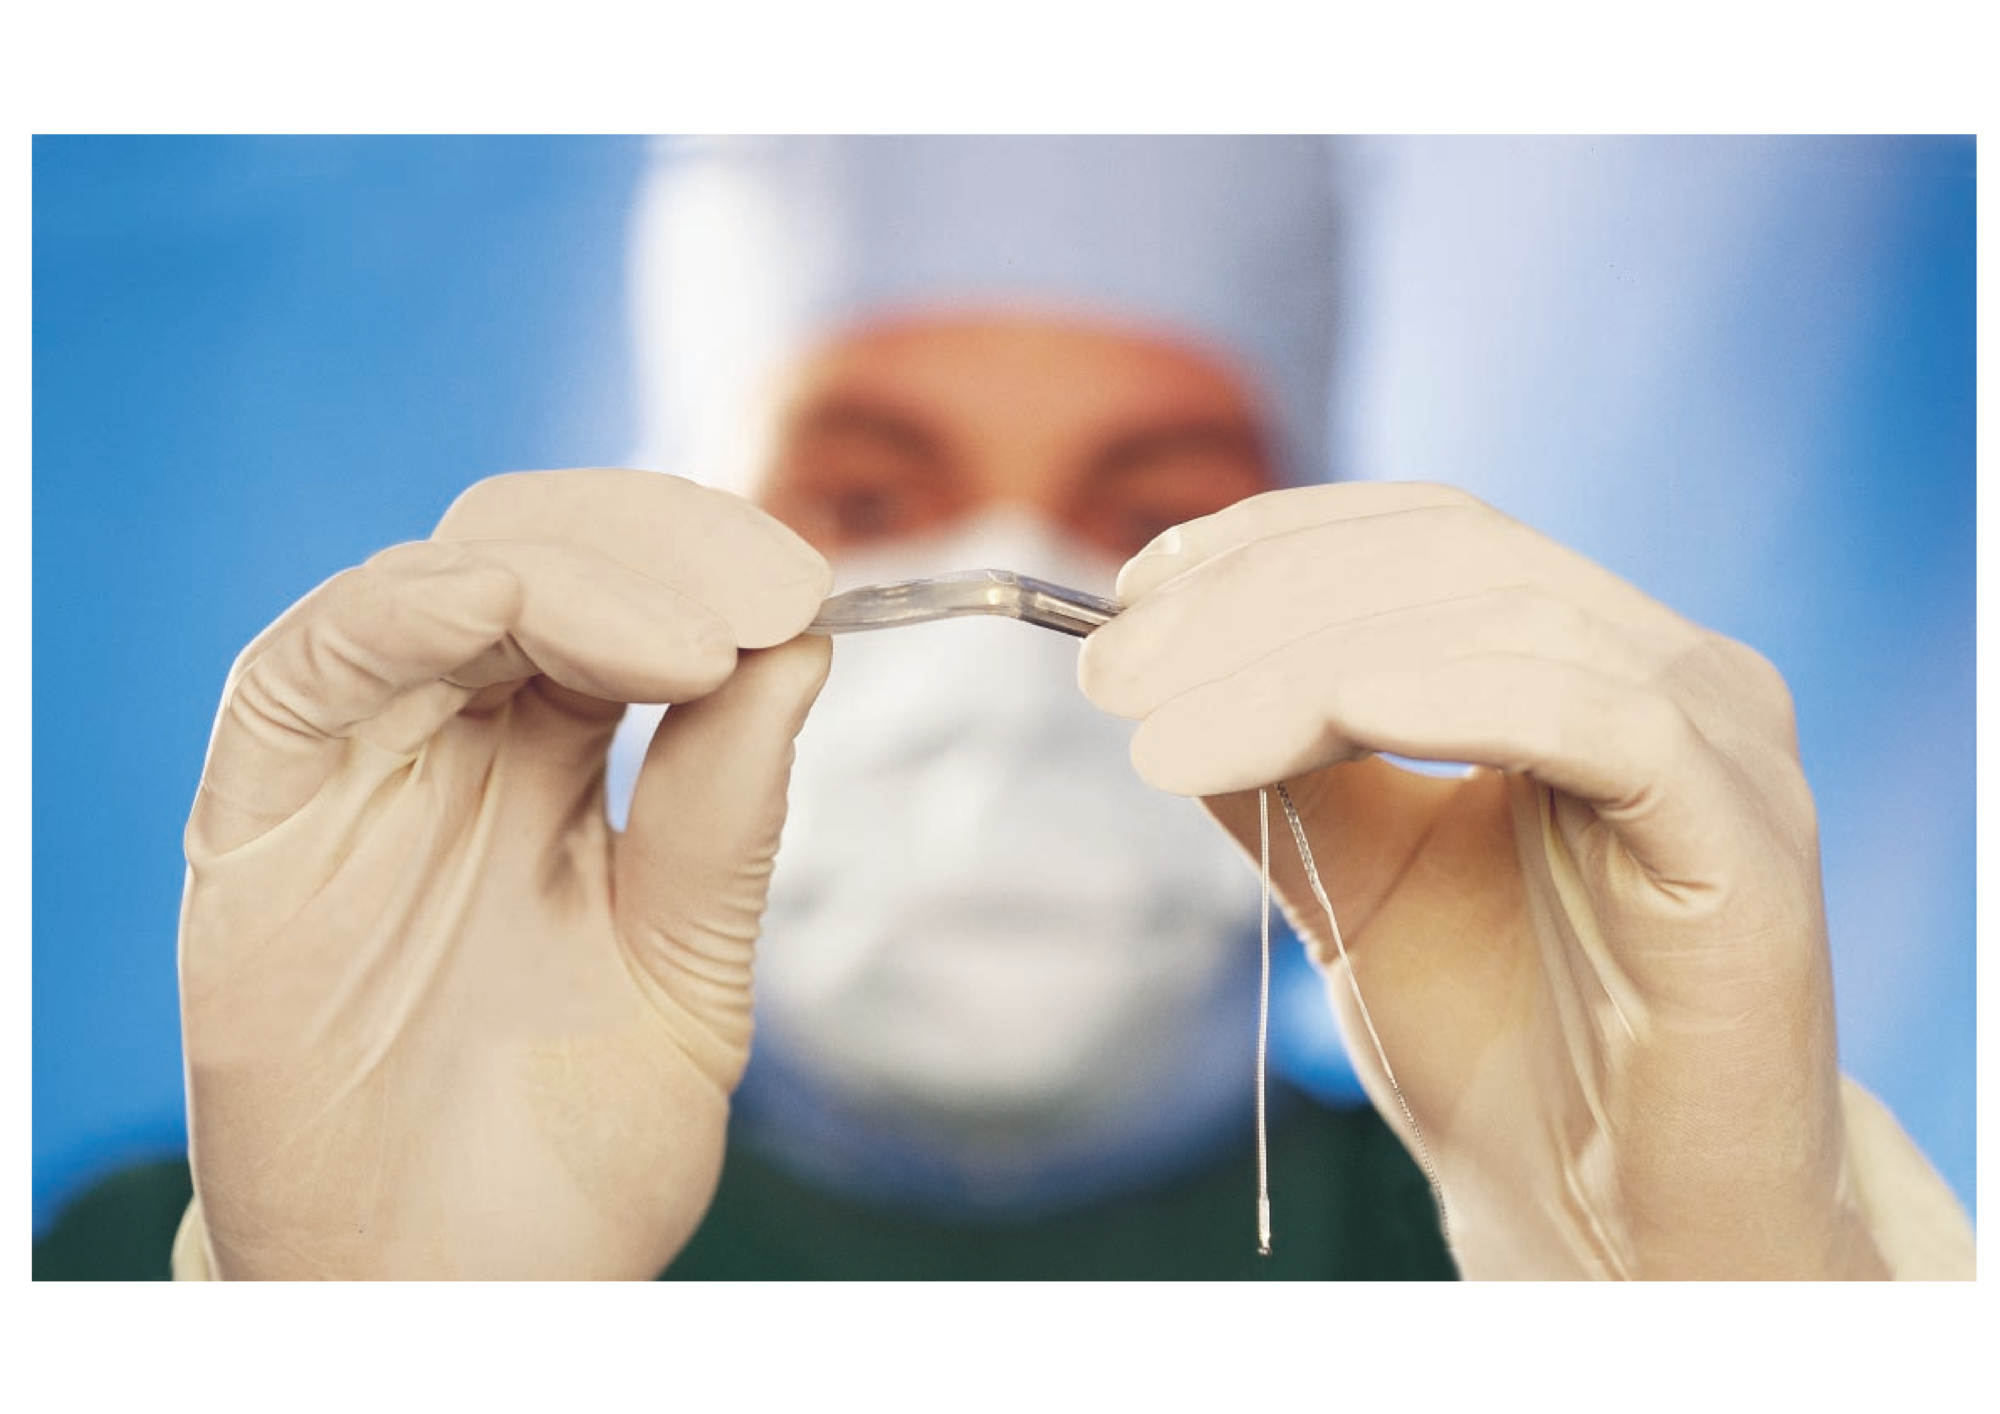 Cirugía de implante coclear no es electiva